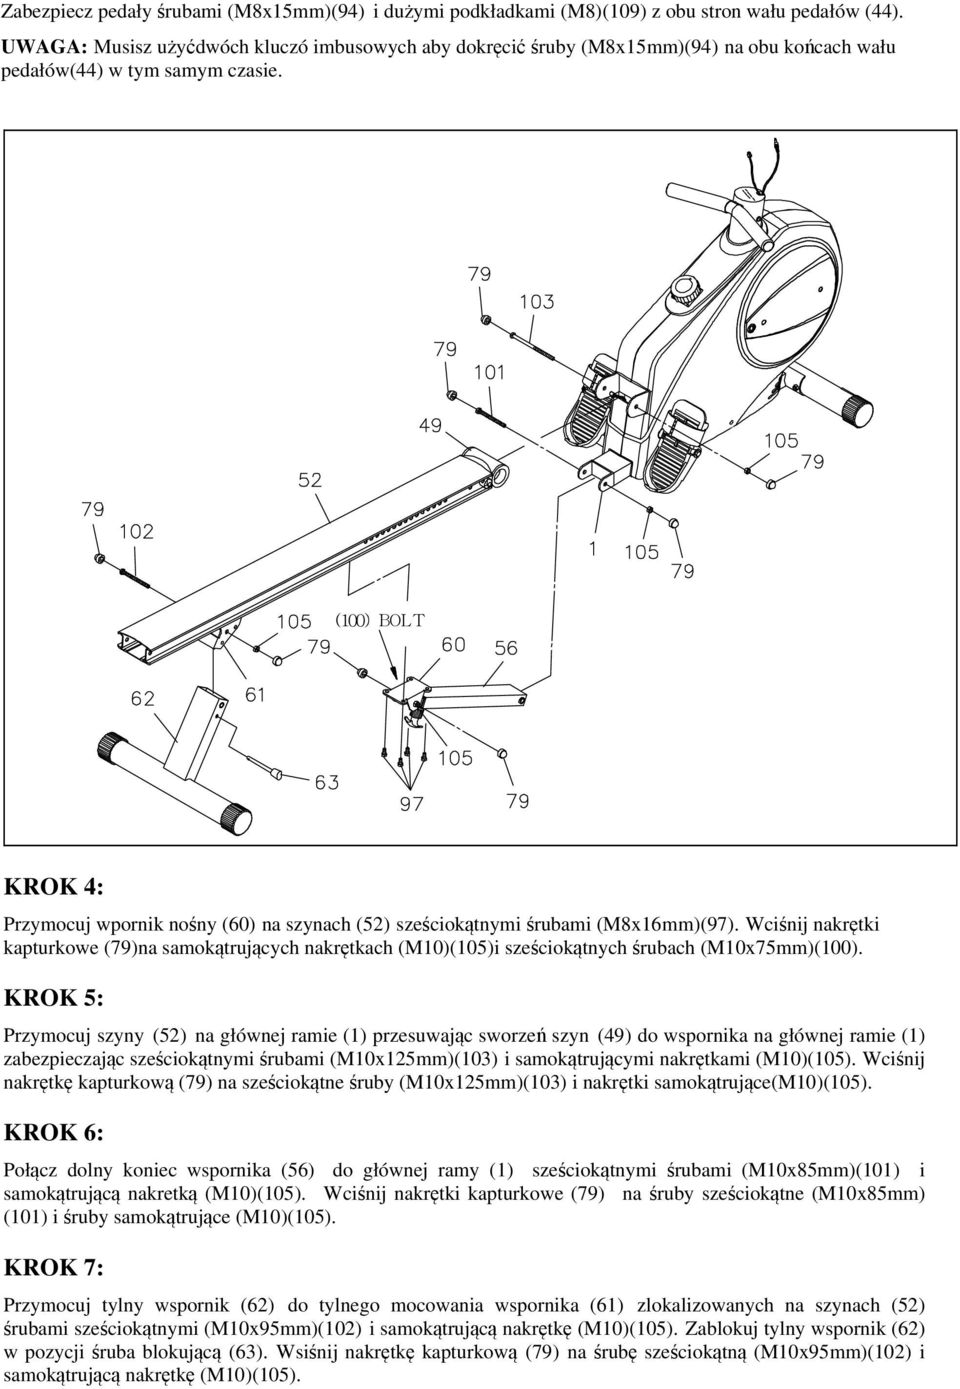 (100) BOLT KROK 4: Przymocuj wpornik nośny (60) na szynach (52) sześciokątnymi śrubami (M8x16mm)(97).